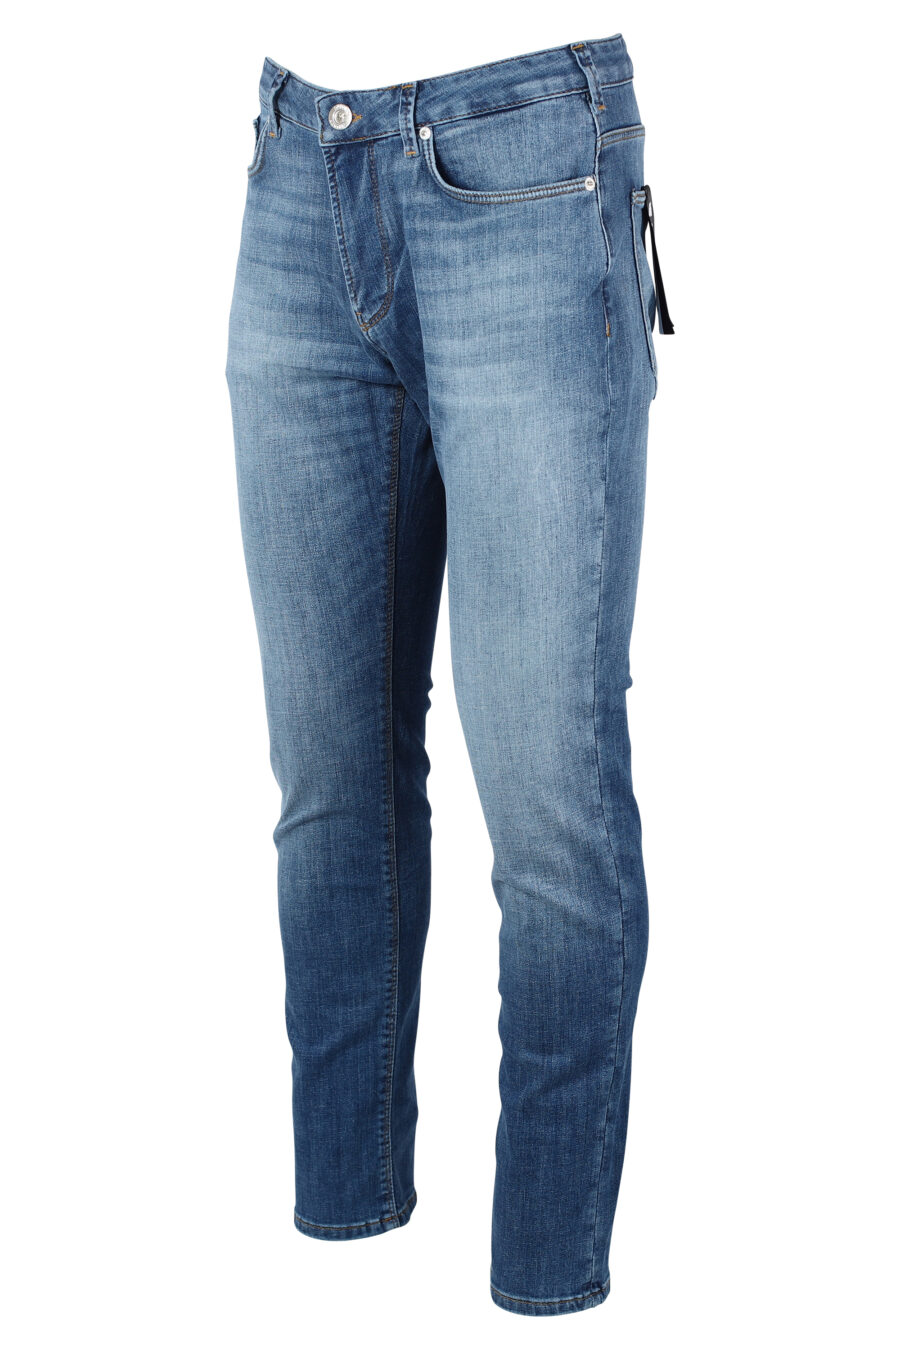 Pantalón vaquero azul con minilogo metal - IMG 9921 1